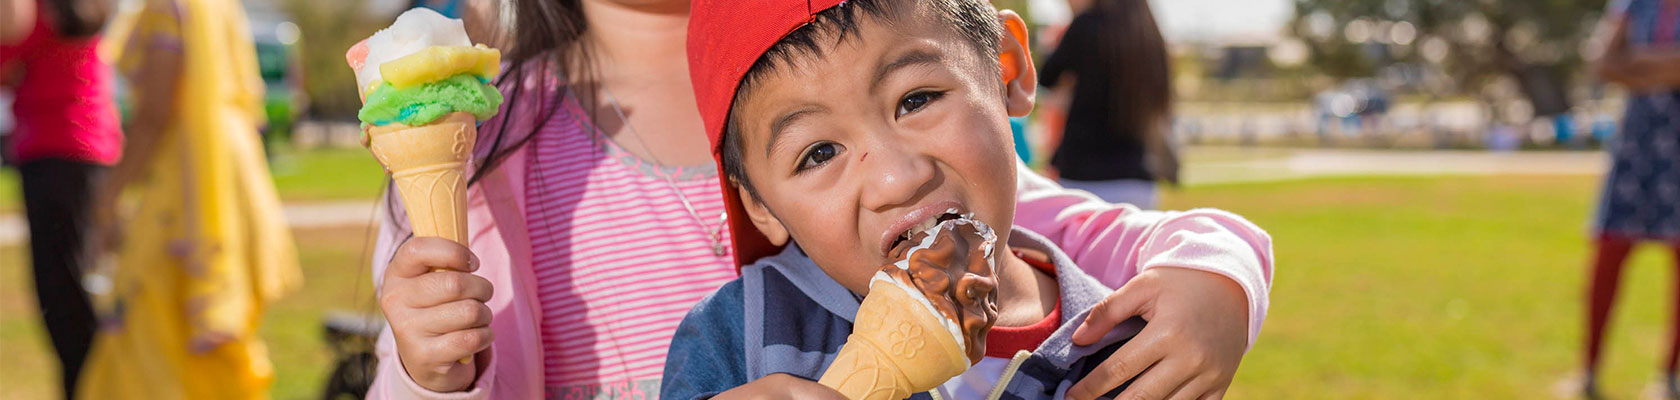 Boy with ice-cream